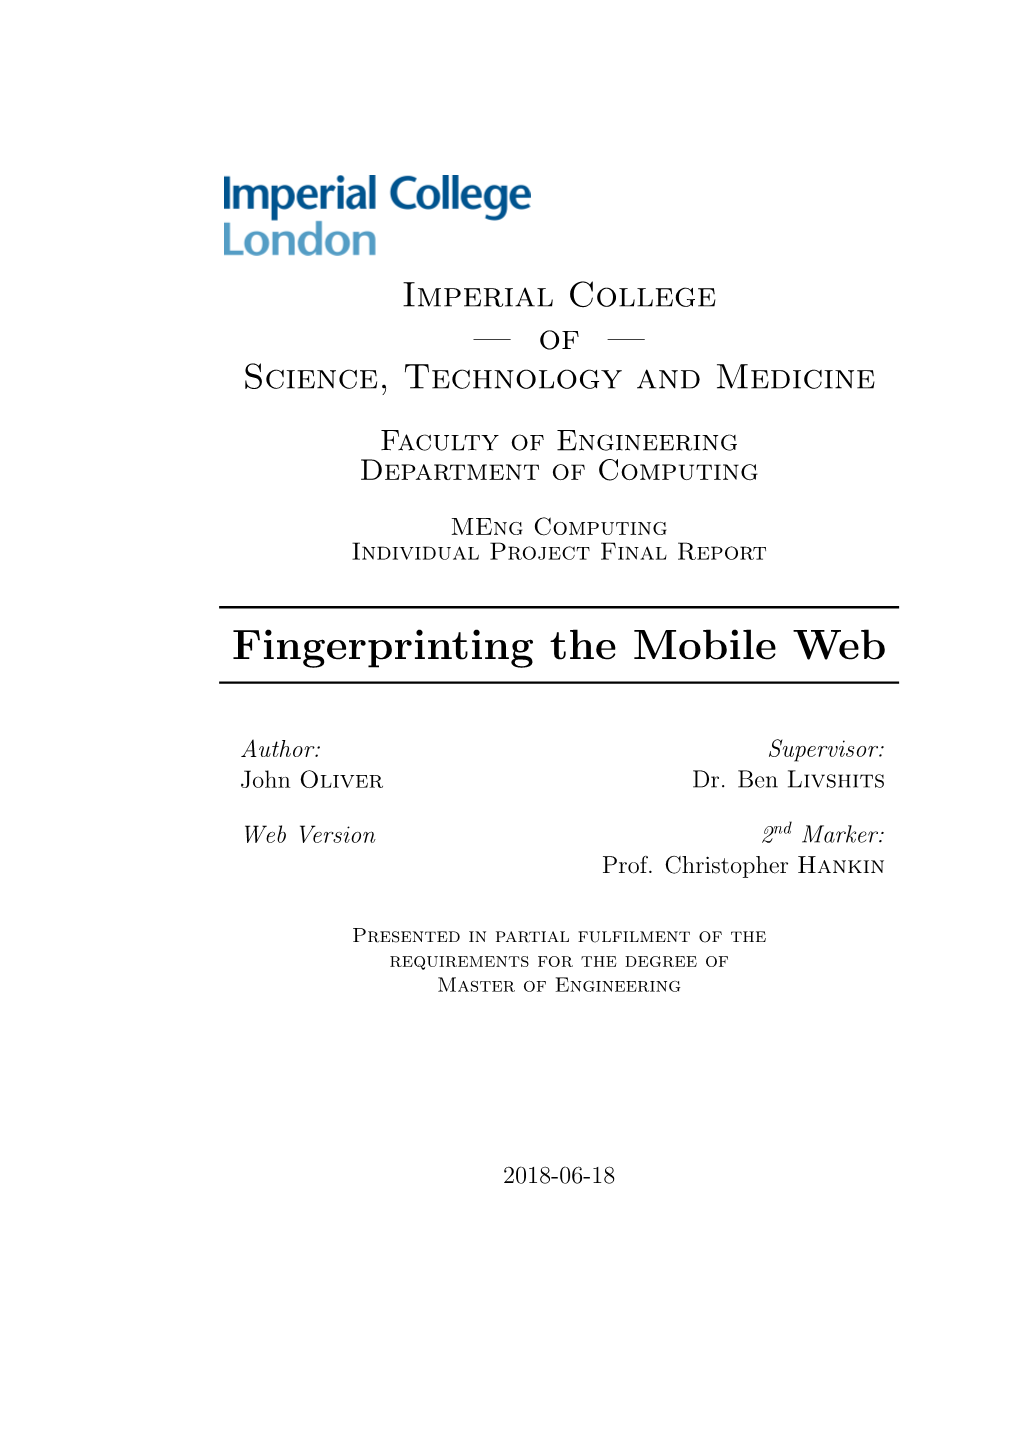 Fingerprinting the Mobile Web